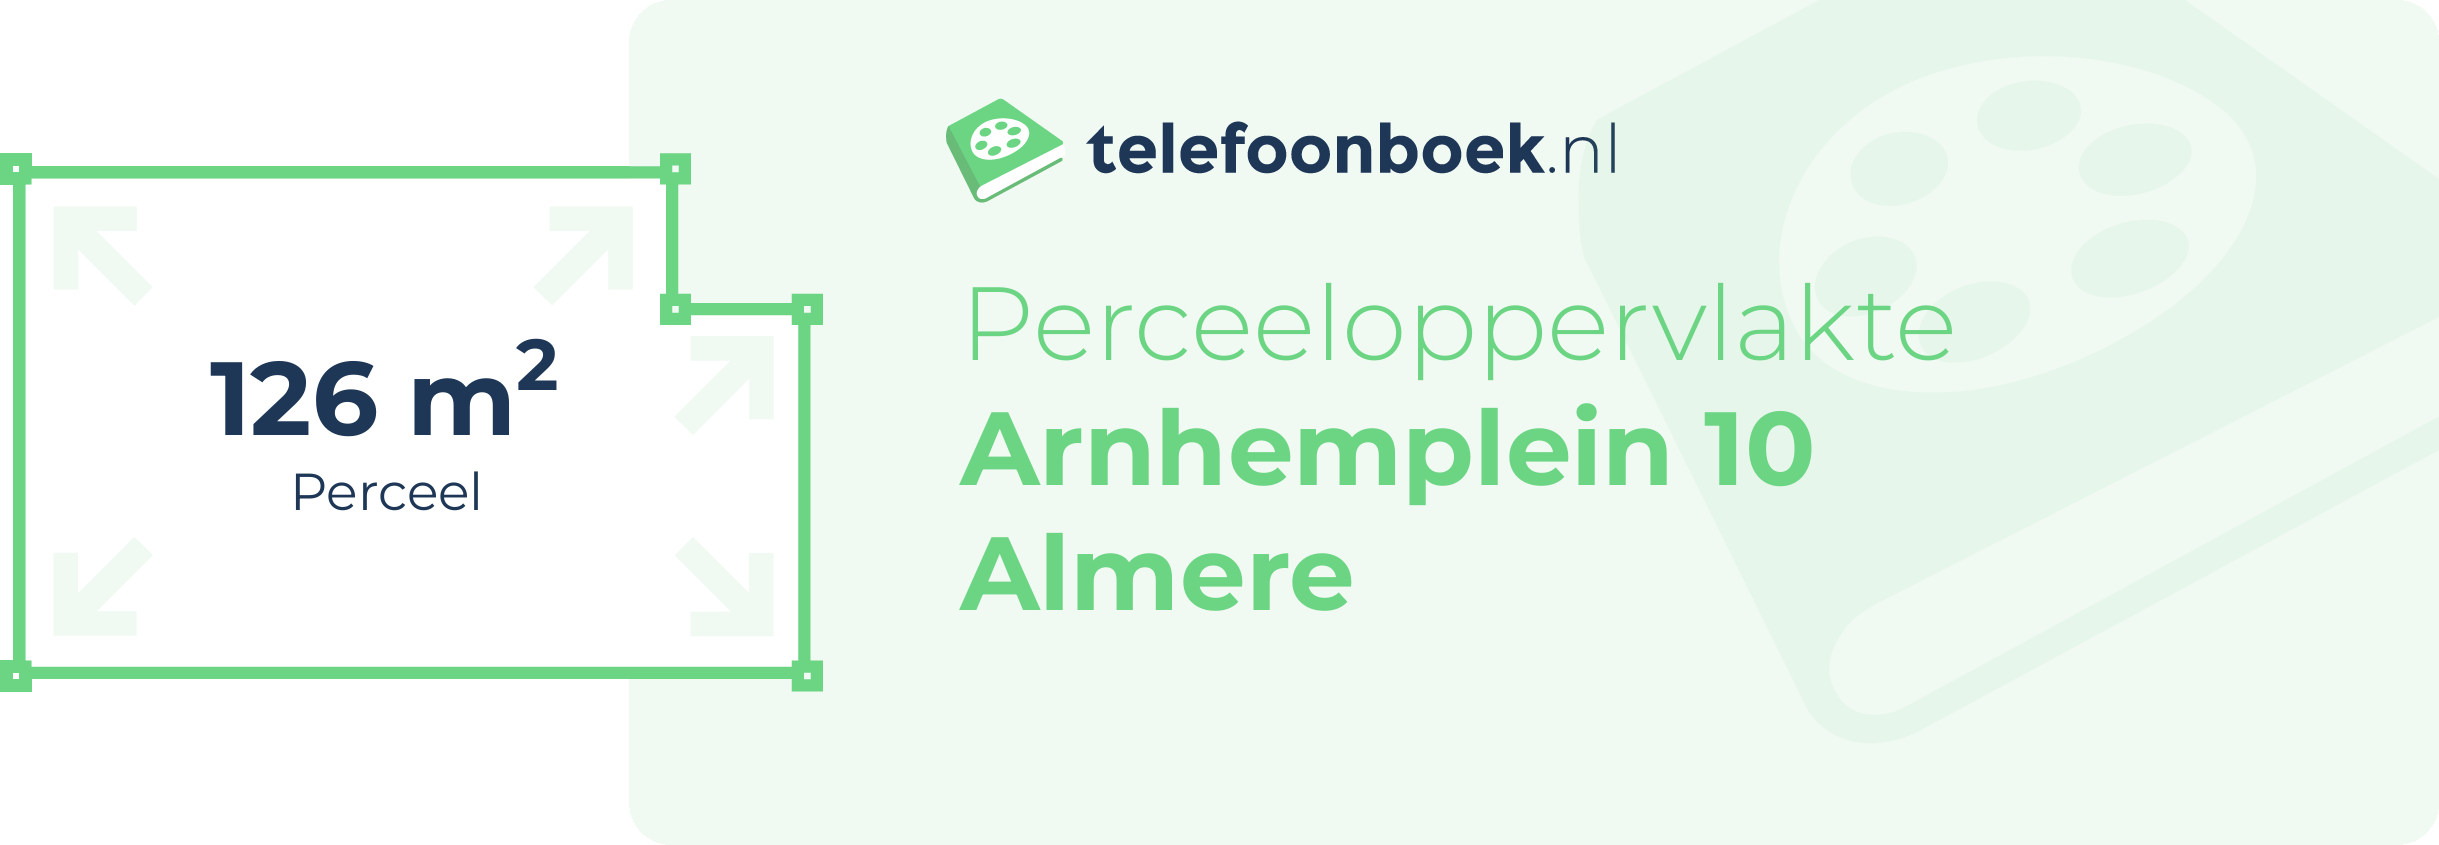 Perceeloppervlakte Arnhemplein 10 Almere